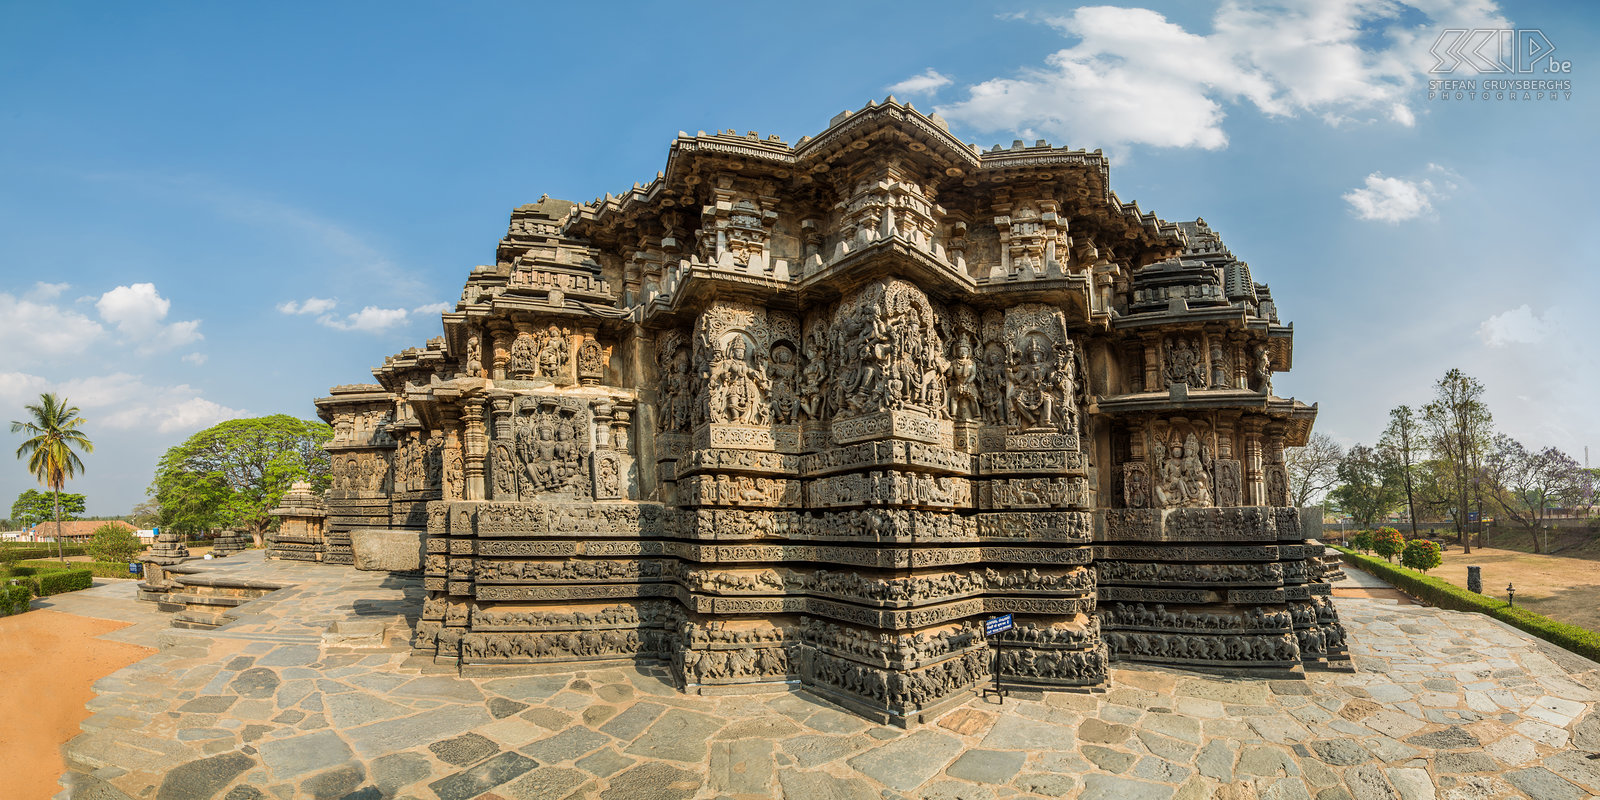 Halebidu Halebidu was de hoofdstad van het Hoysala koninkrijk in de 12e en 13e eeuw. De tempel in Halebidu is een van de beste voorbeelden van prachtige Hoysala architectuur. De muren van de tempel zijn bedekt met een eindeloze verscheidenheid aan reliëfs uit de hindoeïstische mythologie, dieren en dansende figuren. Er zijn ook 2 enorme sculpturen van de Nandi stier. Stefan Cruysberghs